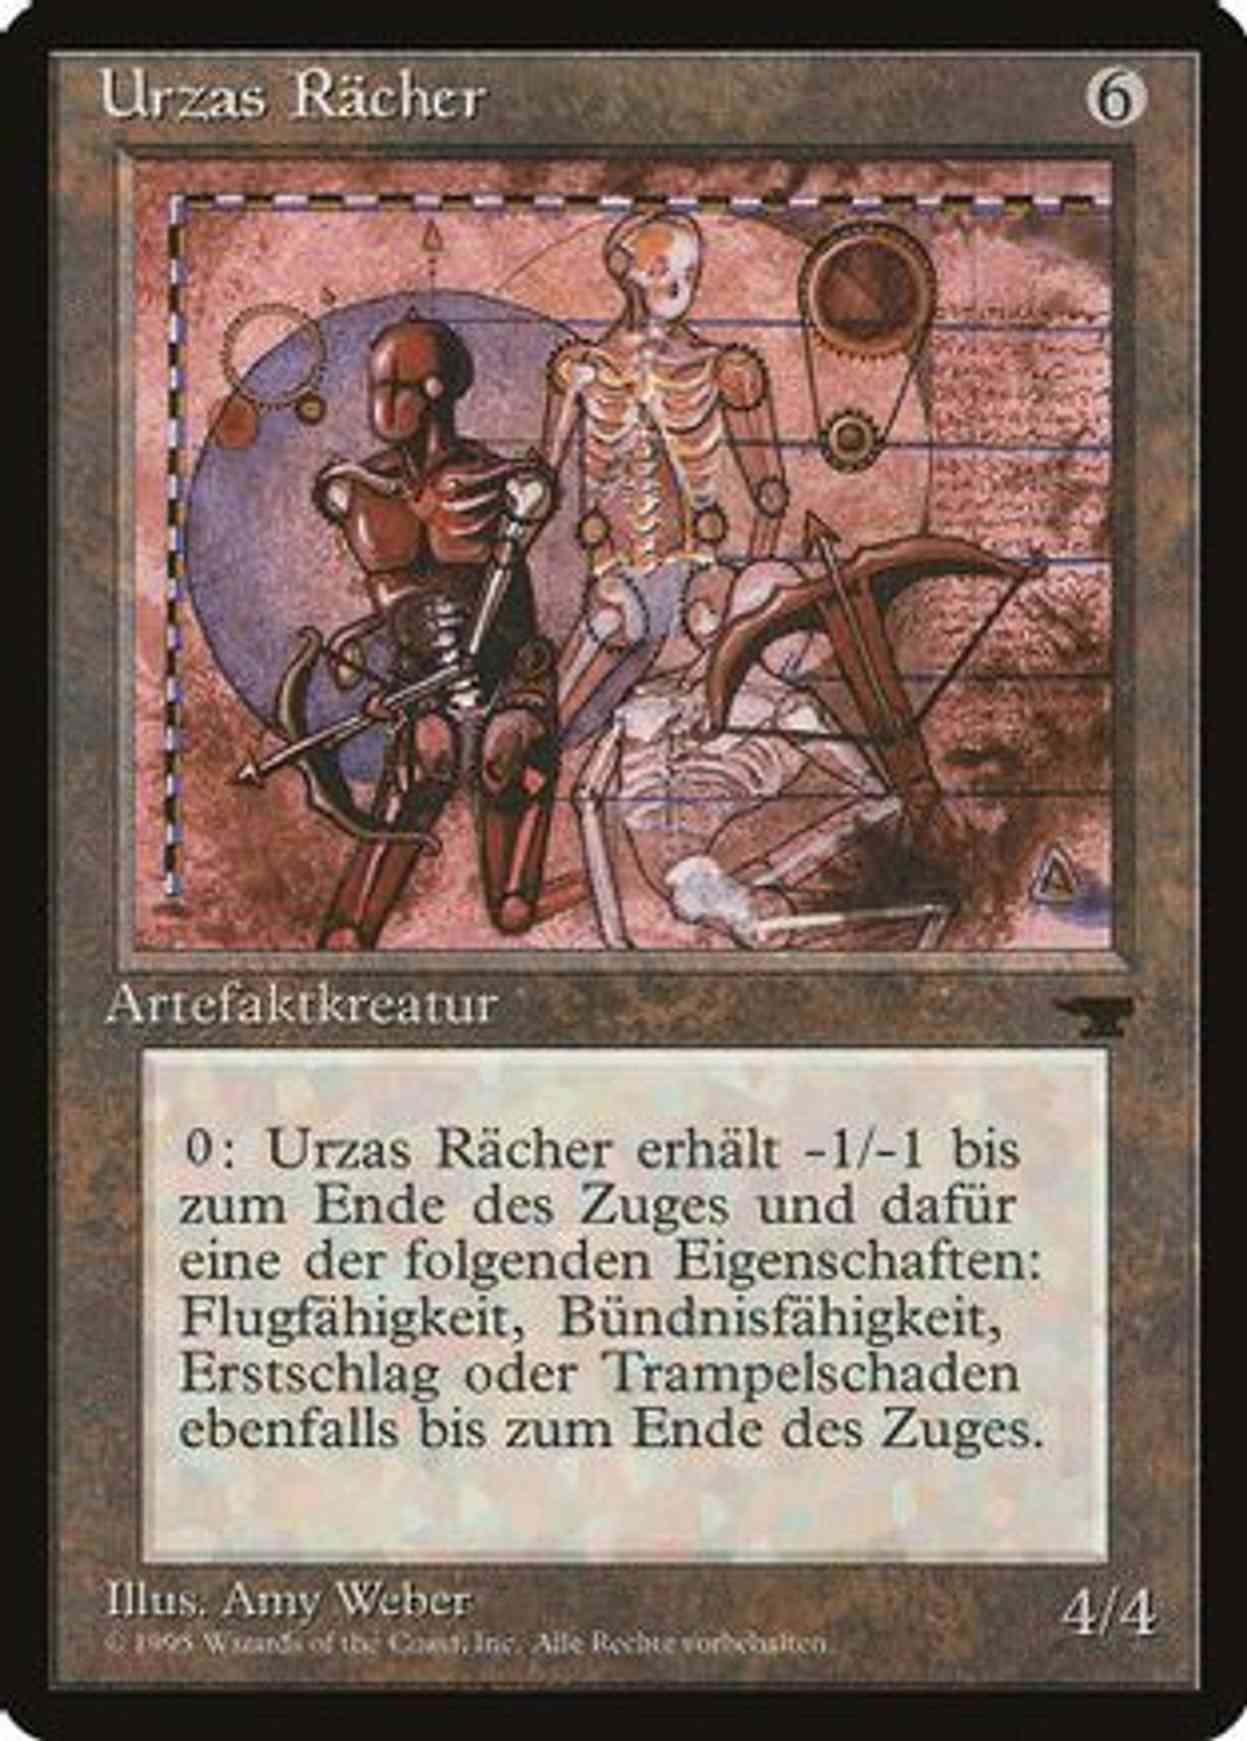 Urza's Avenger (German) - "Urzas Racher" magic card front